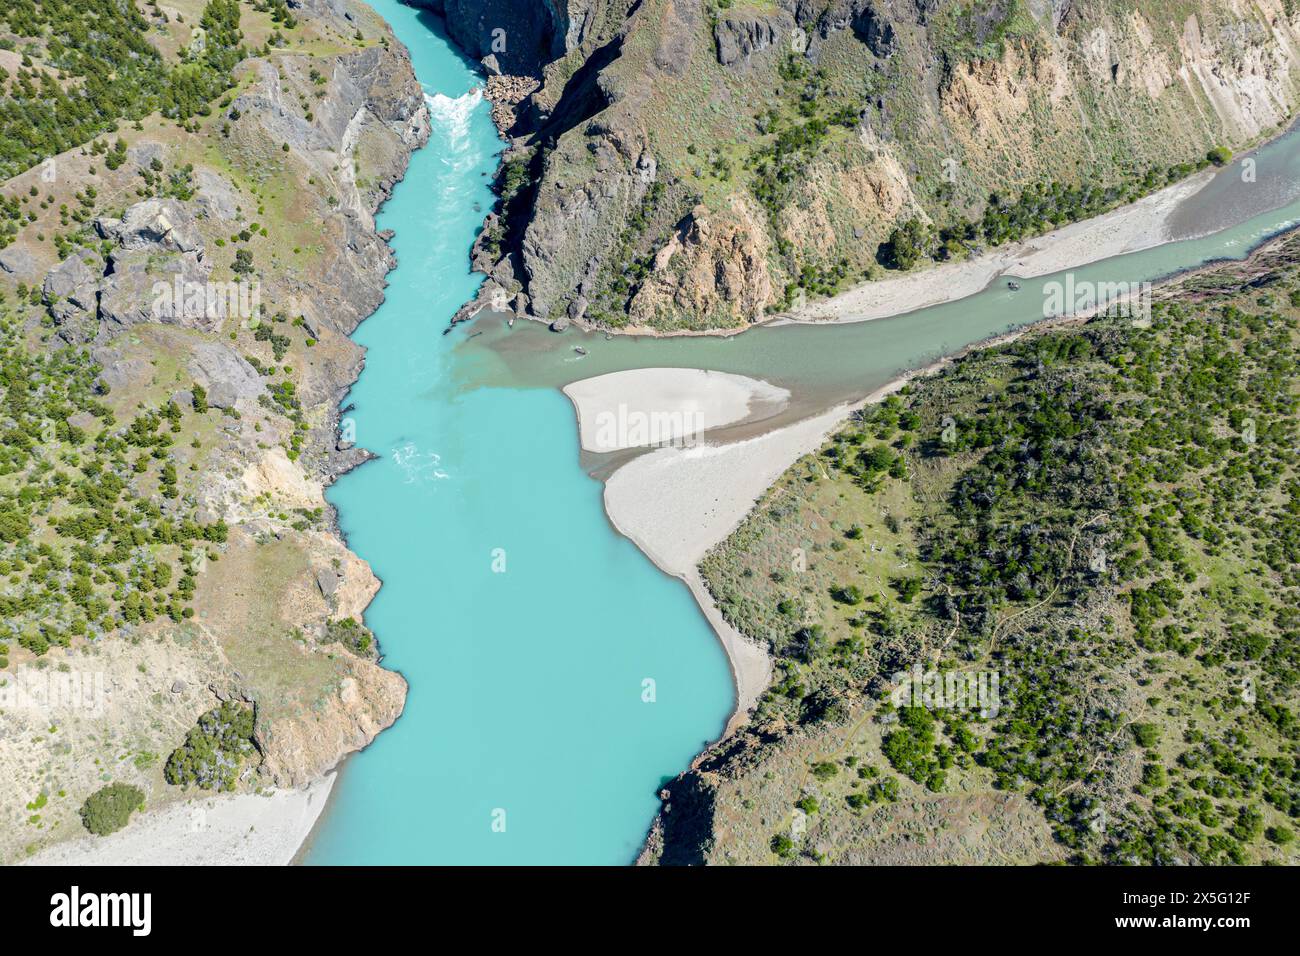 Confluence du Rio Baker et du Rio Cochrane, vue aérienne, l'eau boueuse du Rio Cochrane fusionne avec le ruisseau glaciaire Rio Baker, Patagonie, Chili Banque D'Images